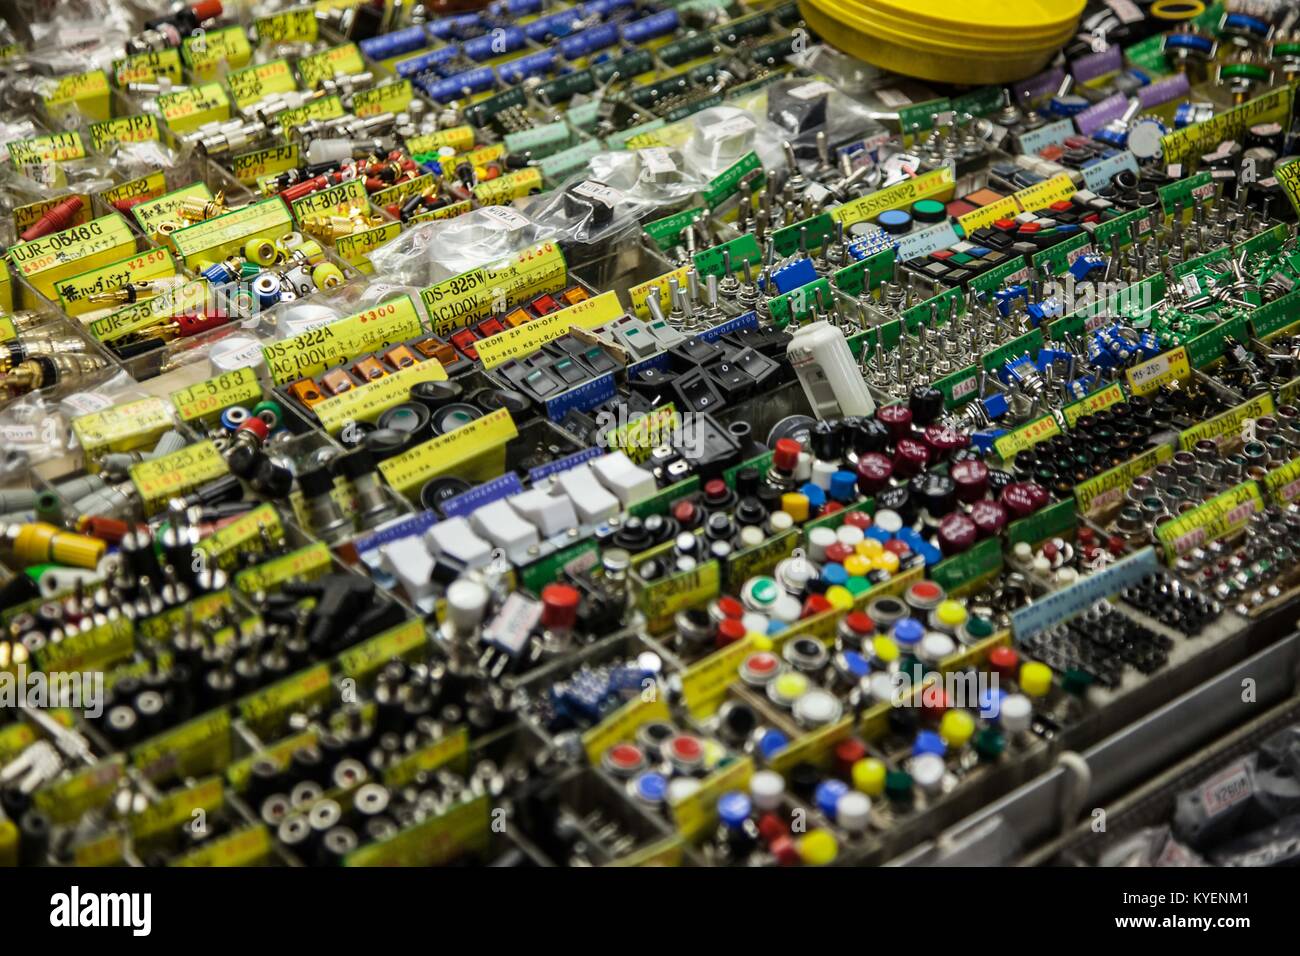 Close-up de plusieurs rangées de cellules contenant de petits composants électroniques pour les cartes de circuits imprimés, dans le quartier de l'électronique d'Akihabara, Chiyoda ward, Tokyo, Japon, Novembre, 2017. () Banque D'Images